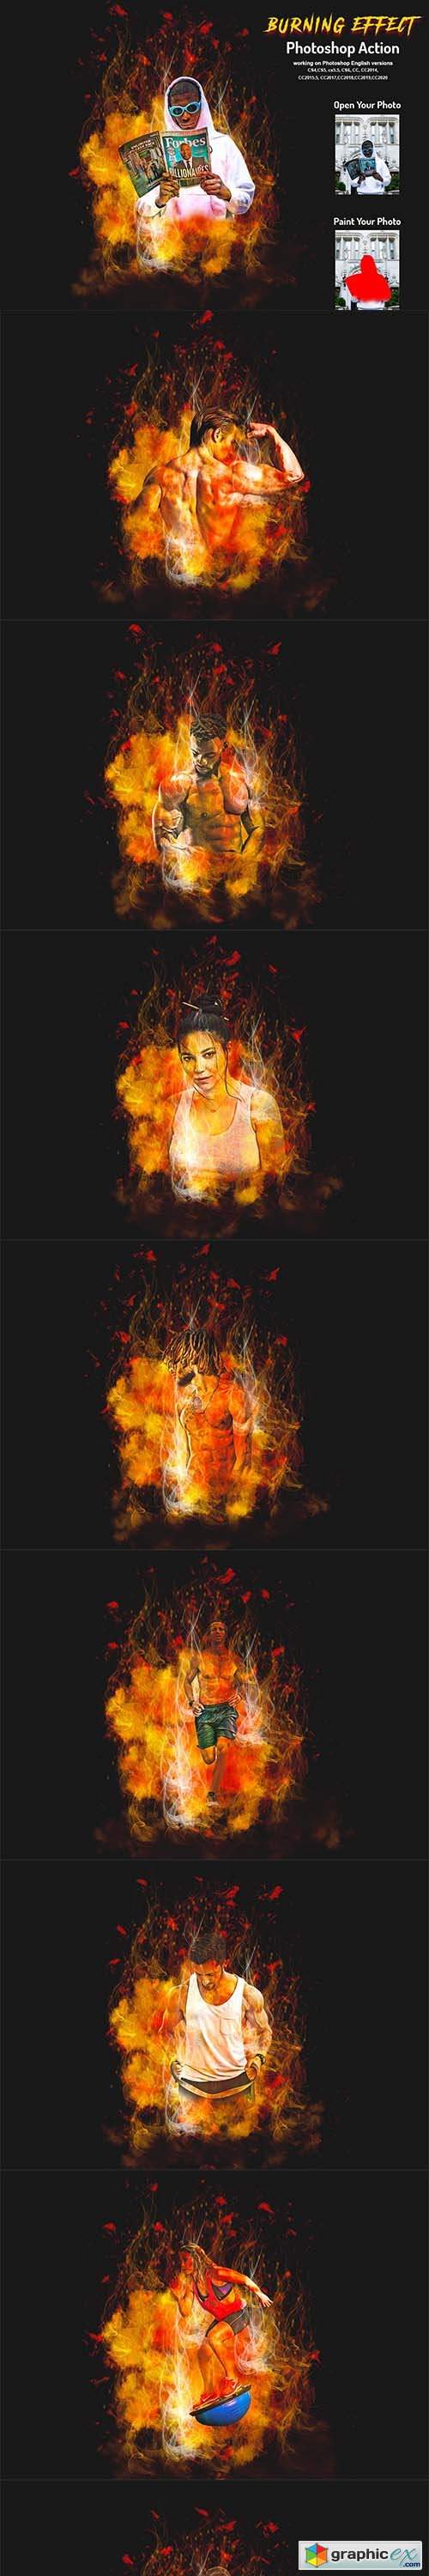 Burning Effect Photoshop Action 